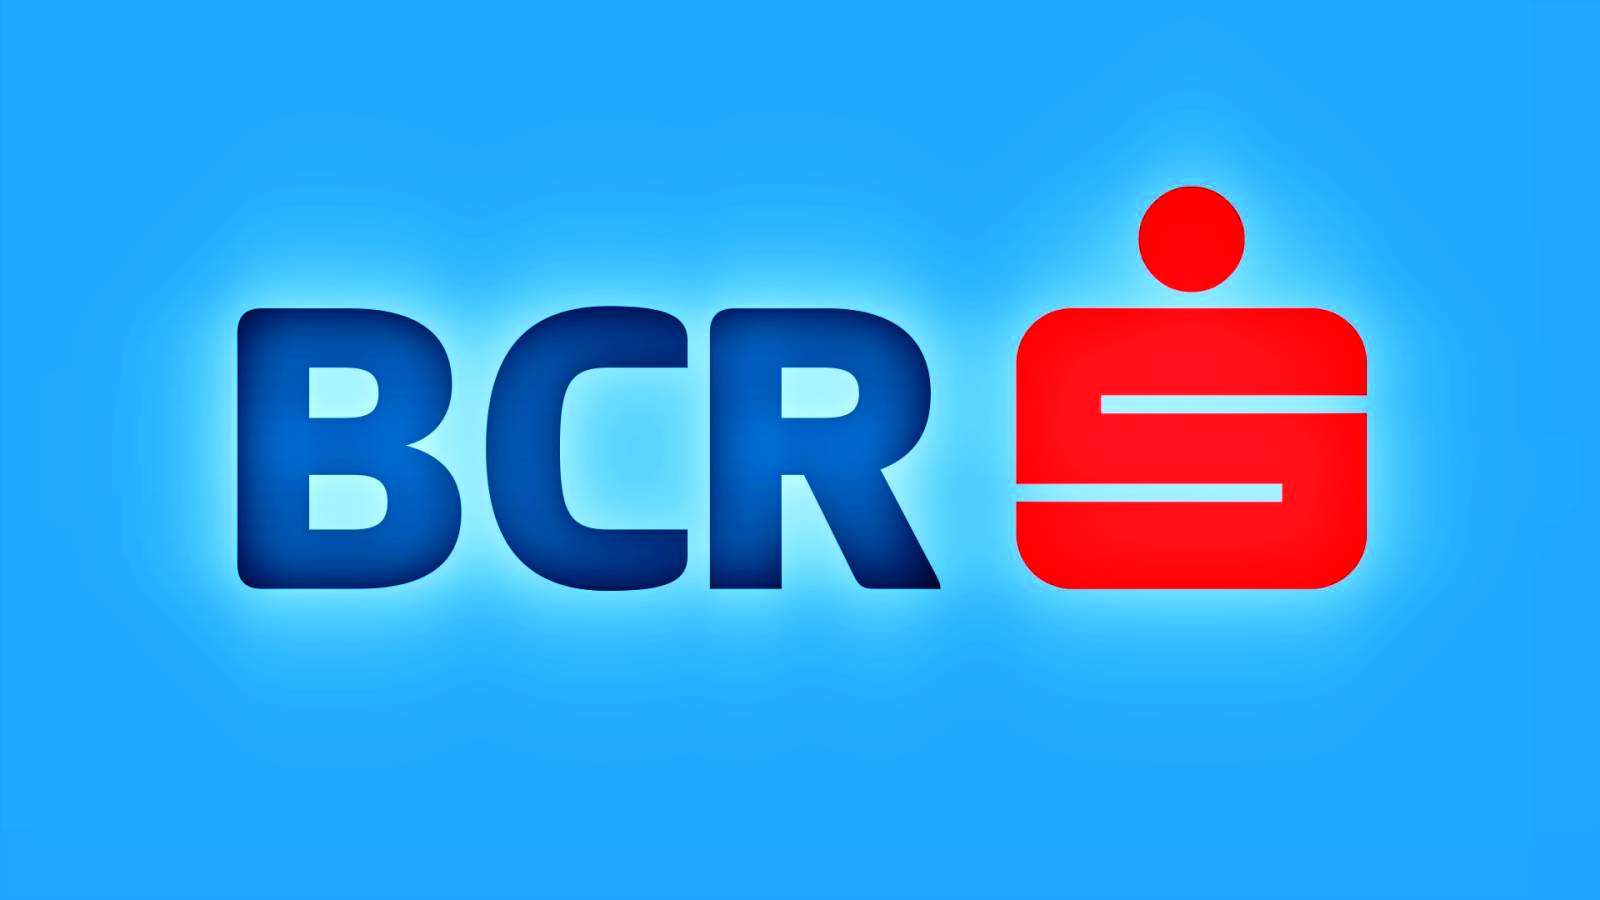 BCR Rumänien Kundinformation IMPOSED Åtgärd över hela världen